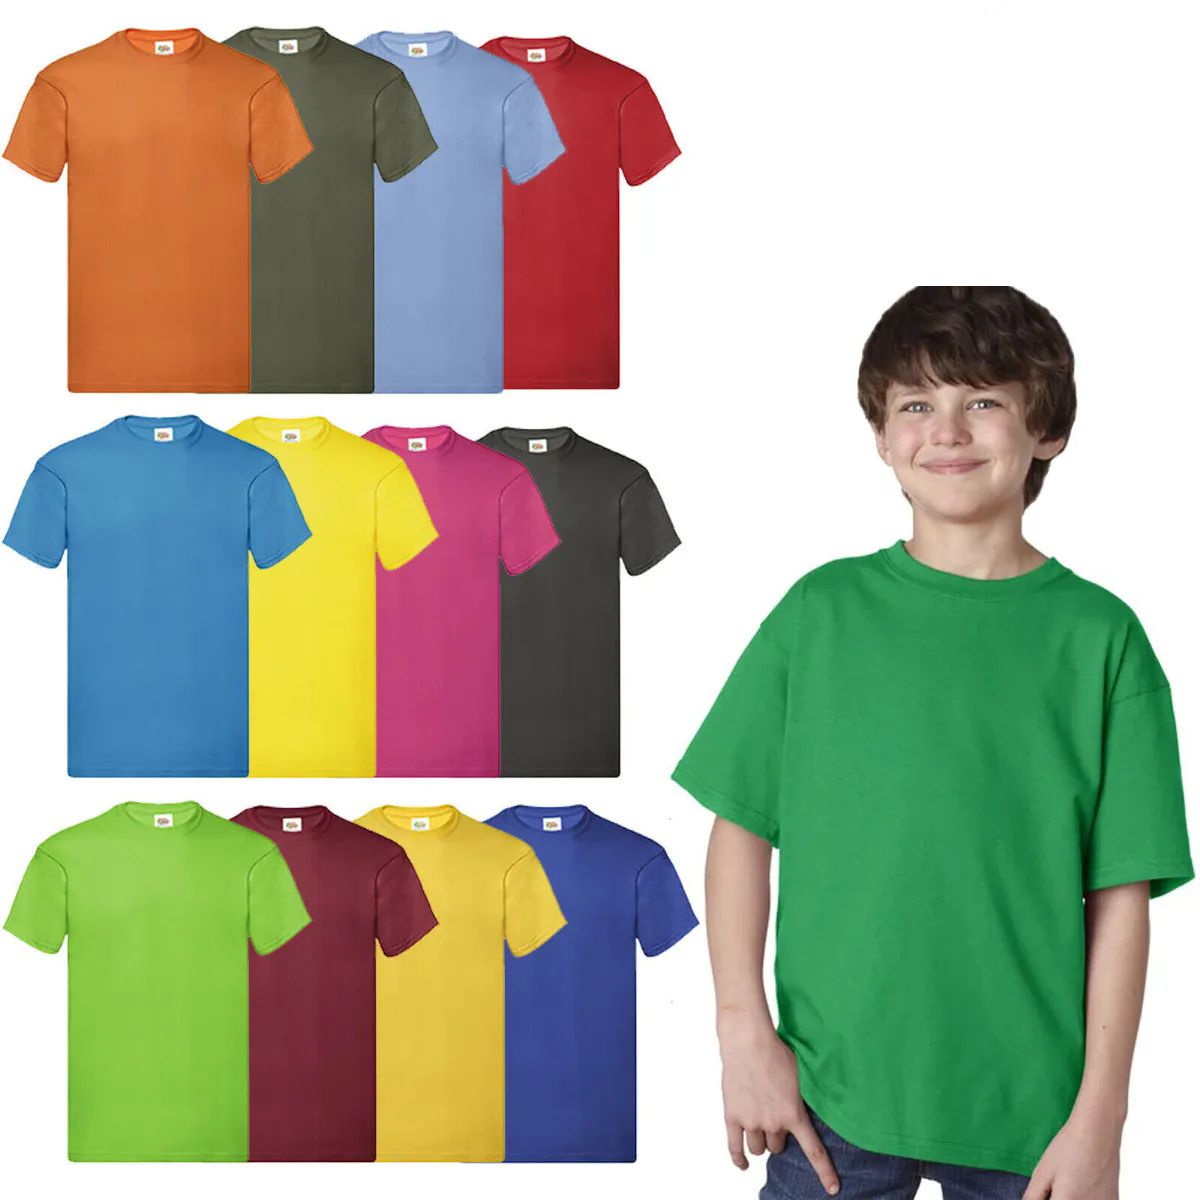 360 Wholesale Billion Hats Kids Youth Cotton Assorted Colors T Shirts Size L